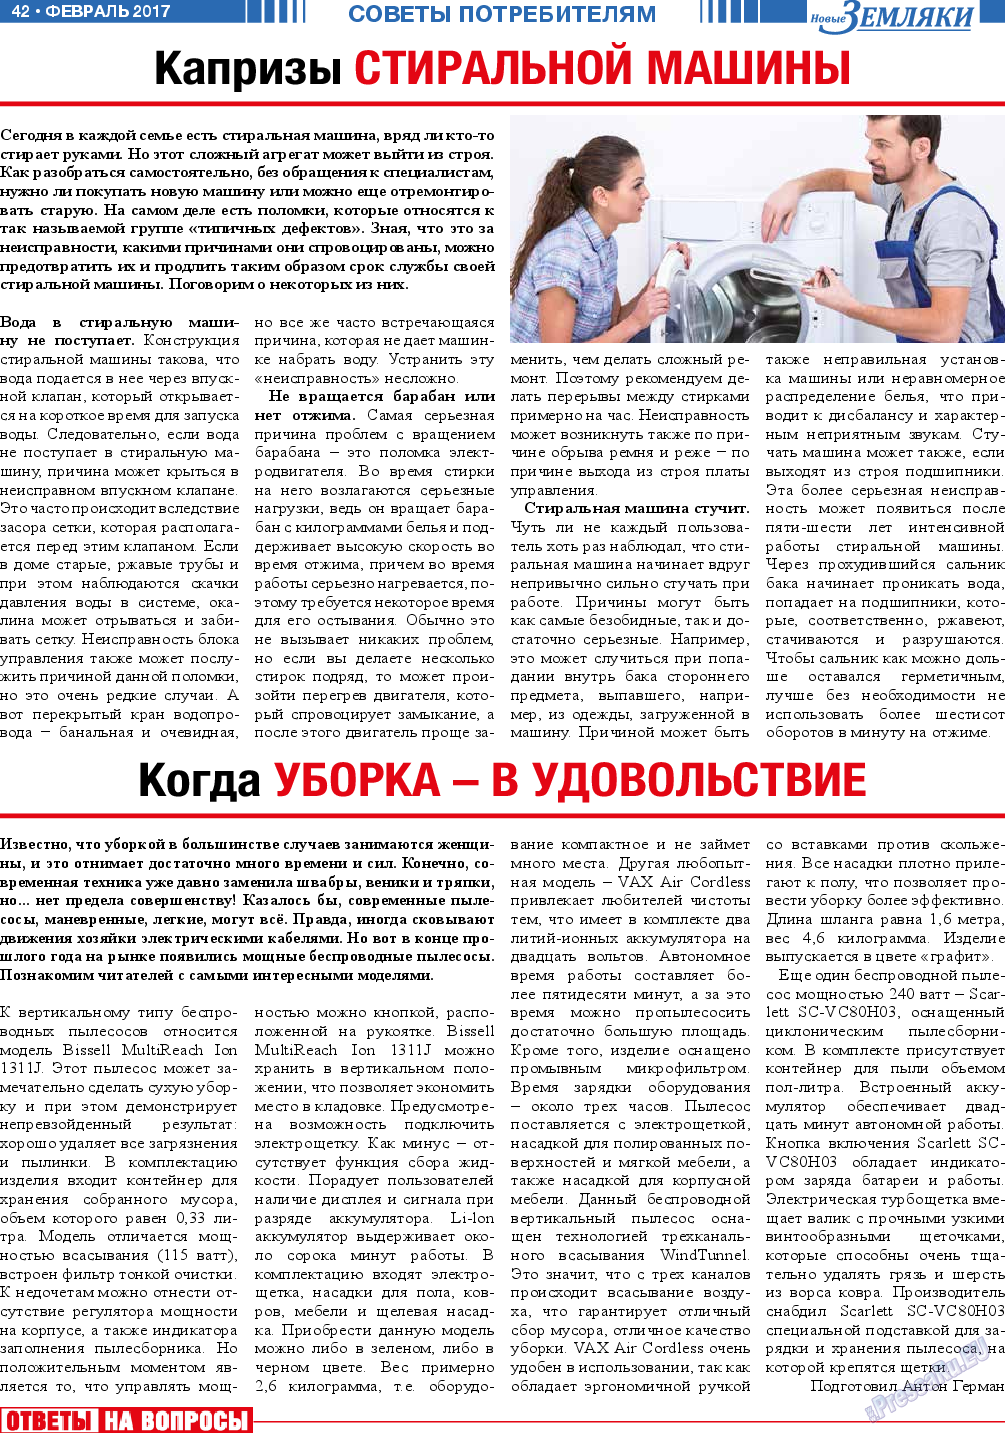 Новые Земляки, газета. 2017 №2 стр.42